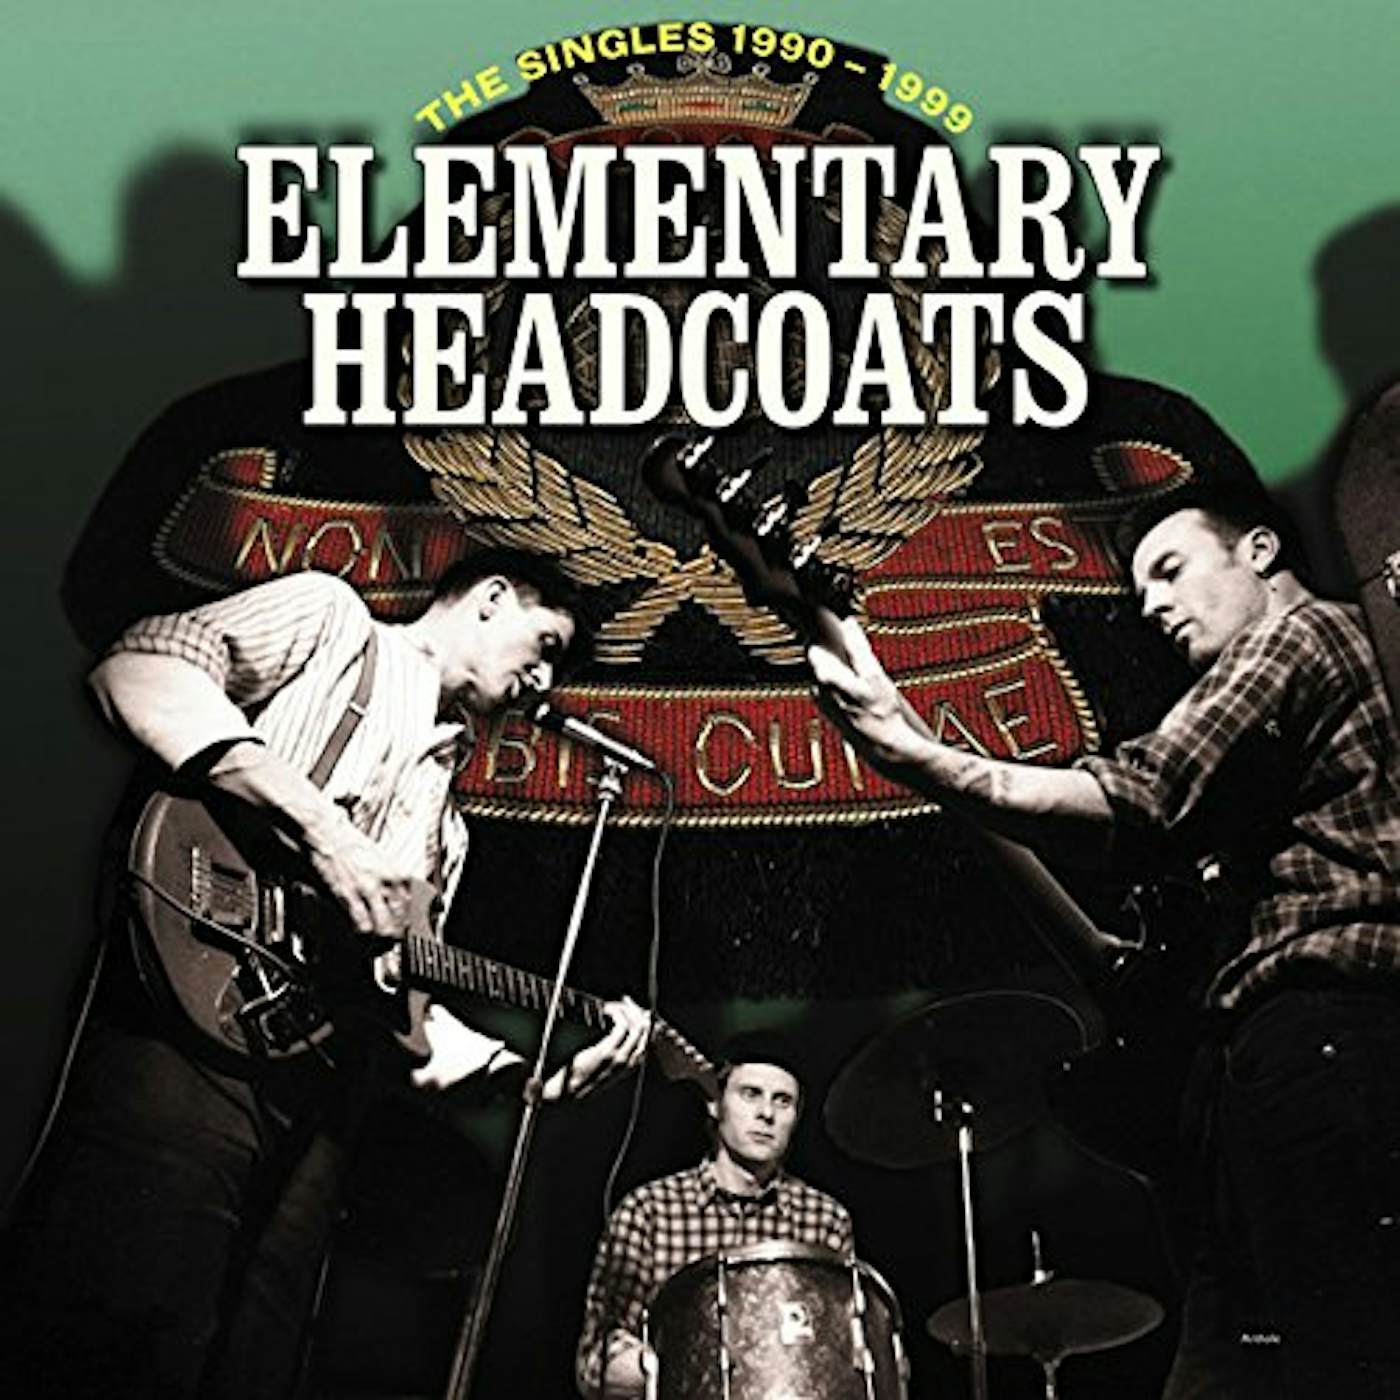 Thee Headcoats ELEMENTARY HEADCOATS (THE SINGLES 1990 - 1999) Vinyl Record